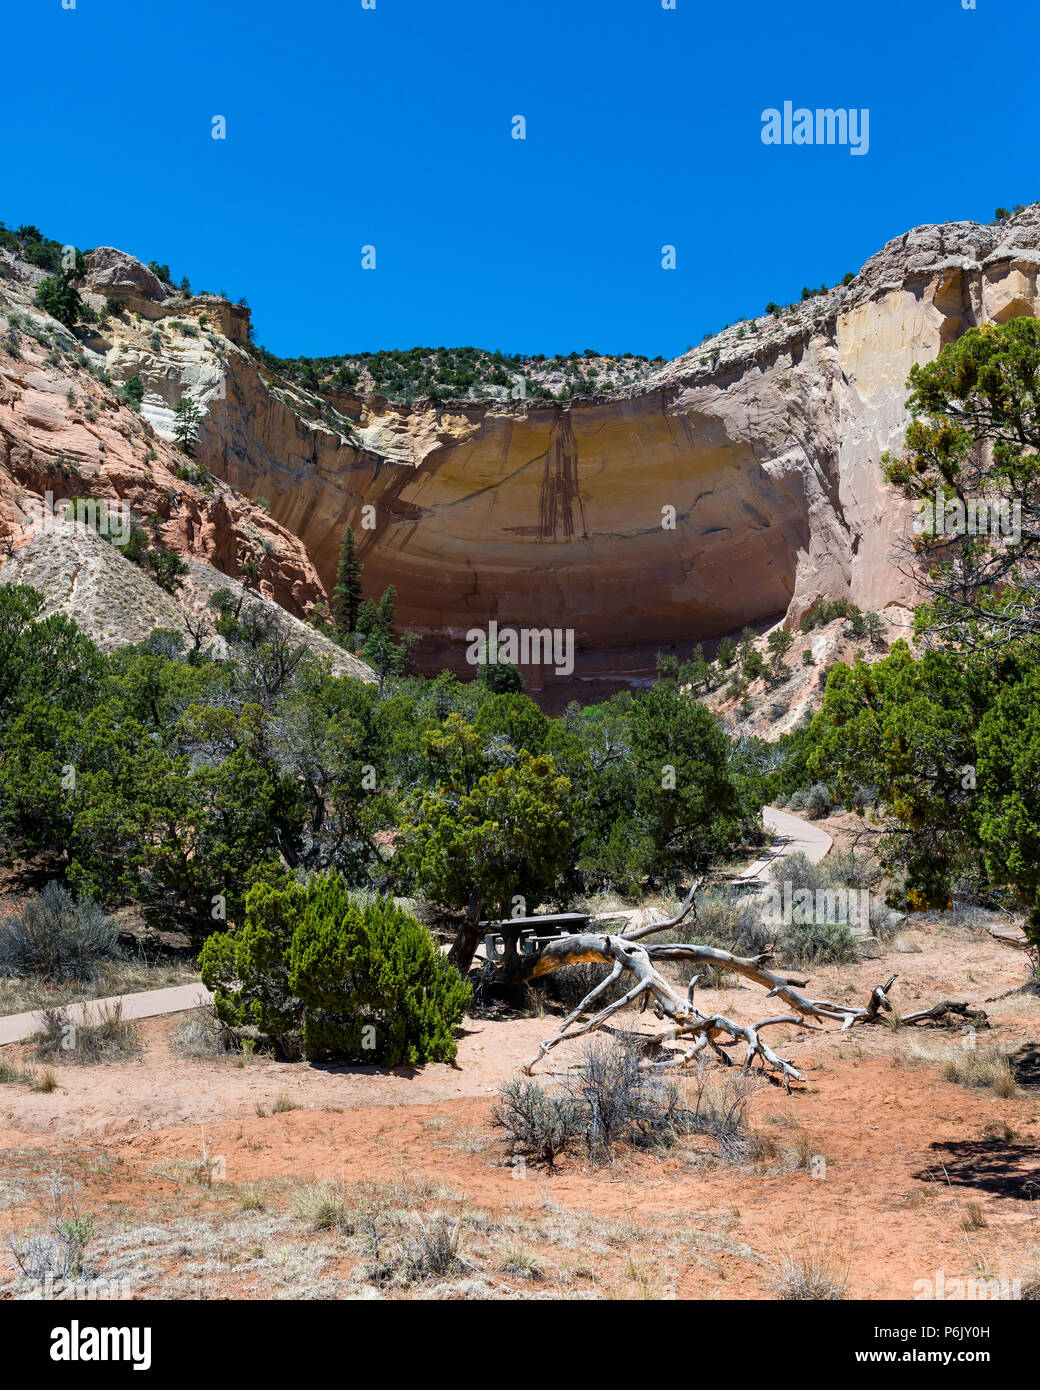 Anfiteatro di eco nei pressi di Ghost Ranch Abiquiú in Nuovo Messico. Scena naturale con formazioni rocciose e alberi e cespugli. Foto Stock